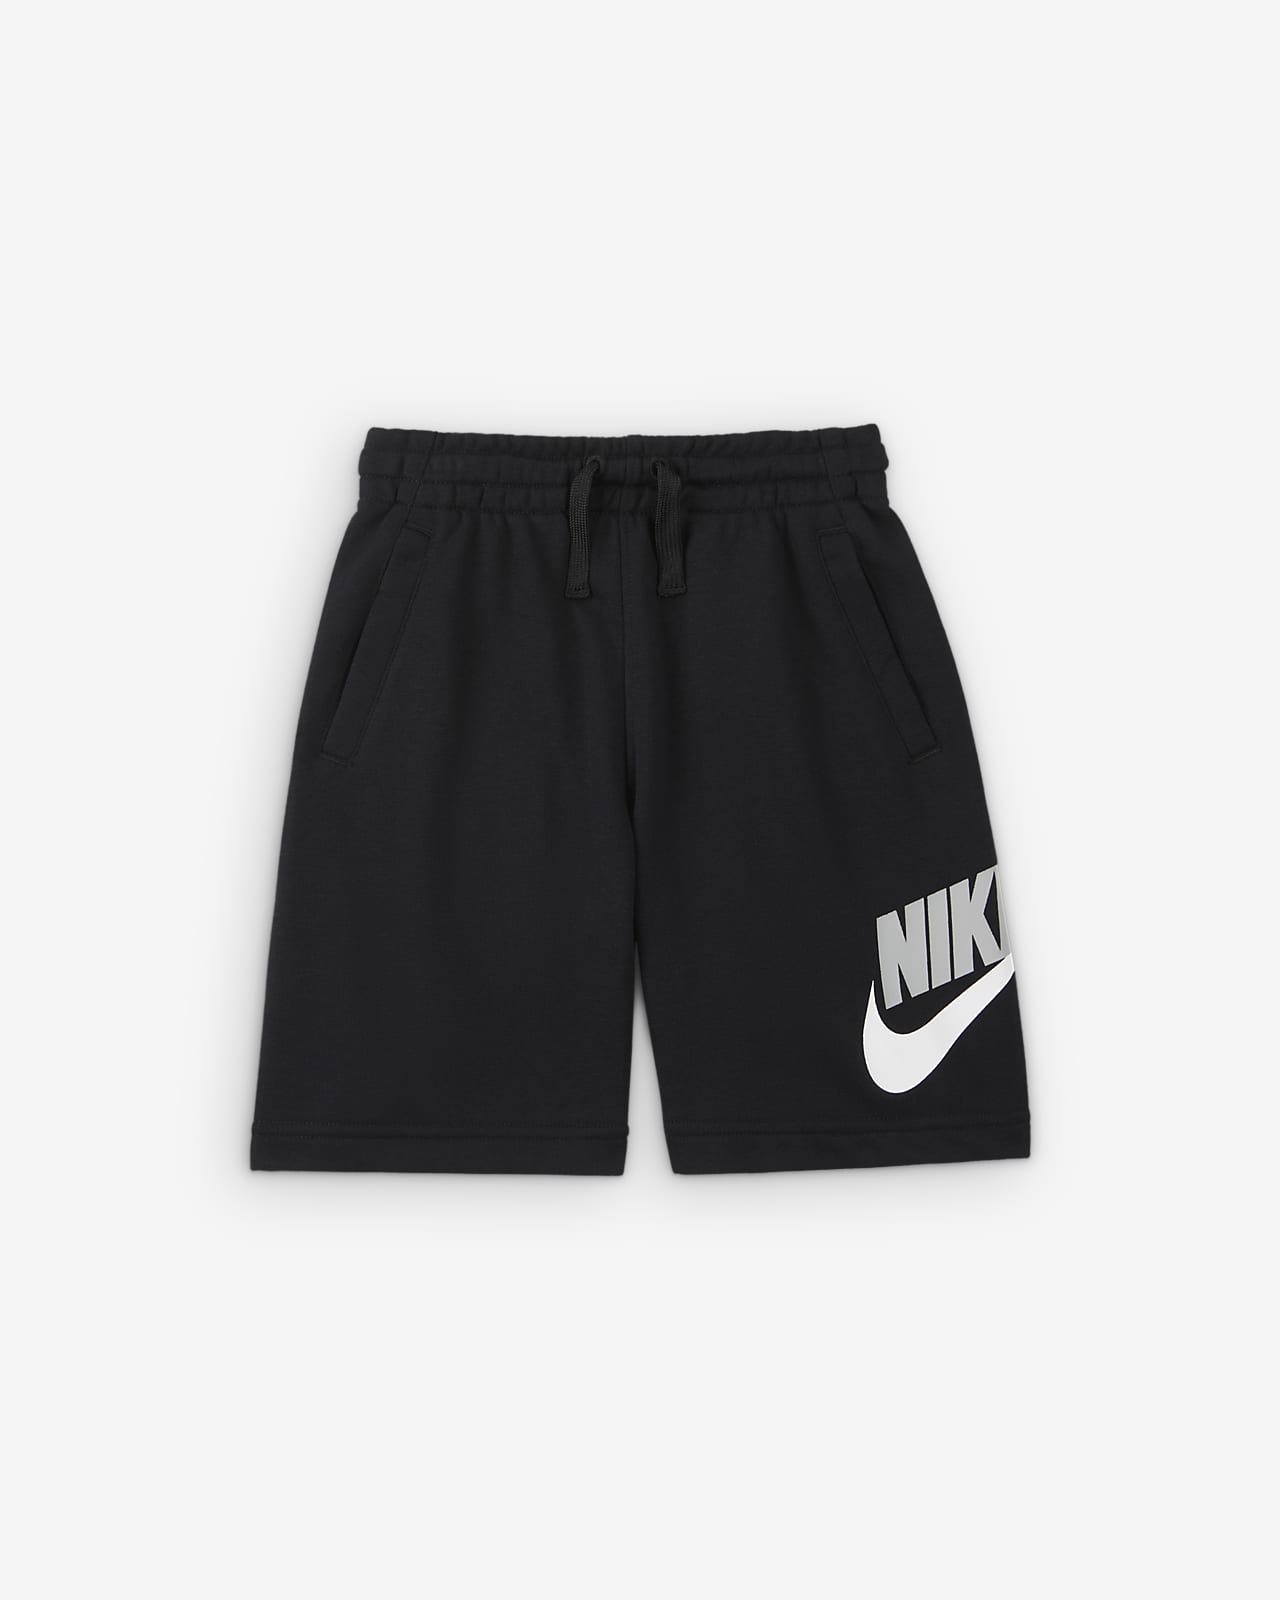 Shorts Nike – Bambino/a